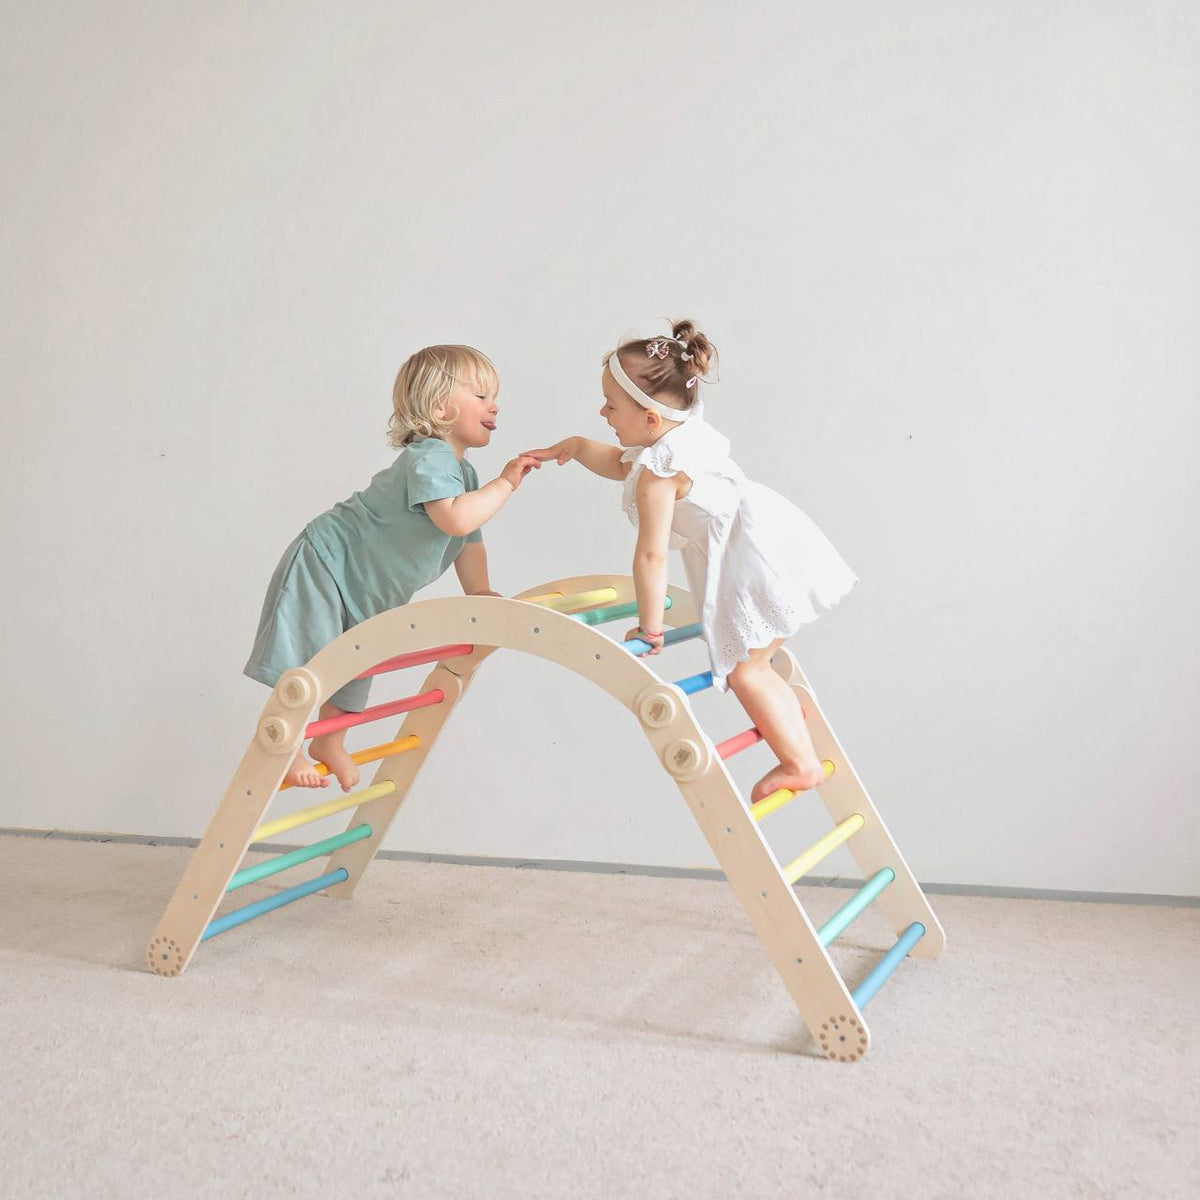 Maxi estrutura de trepar para crianças (conjunto L com baloiço) de cor clara